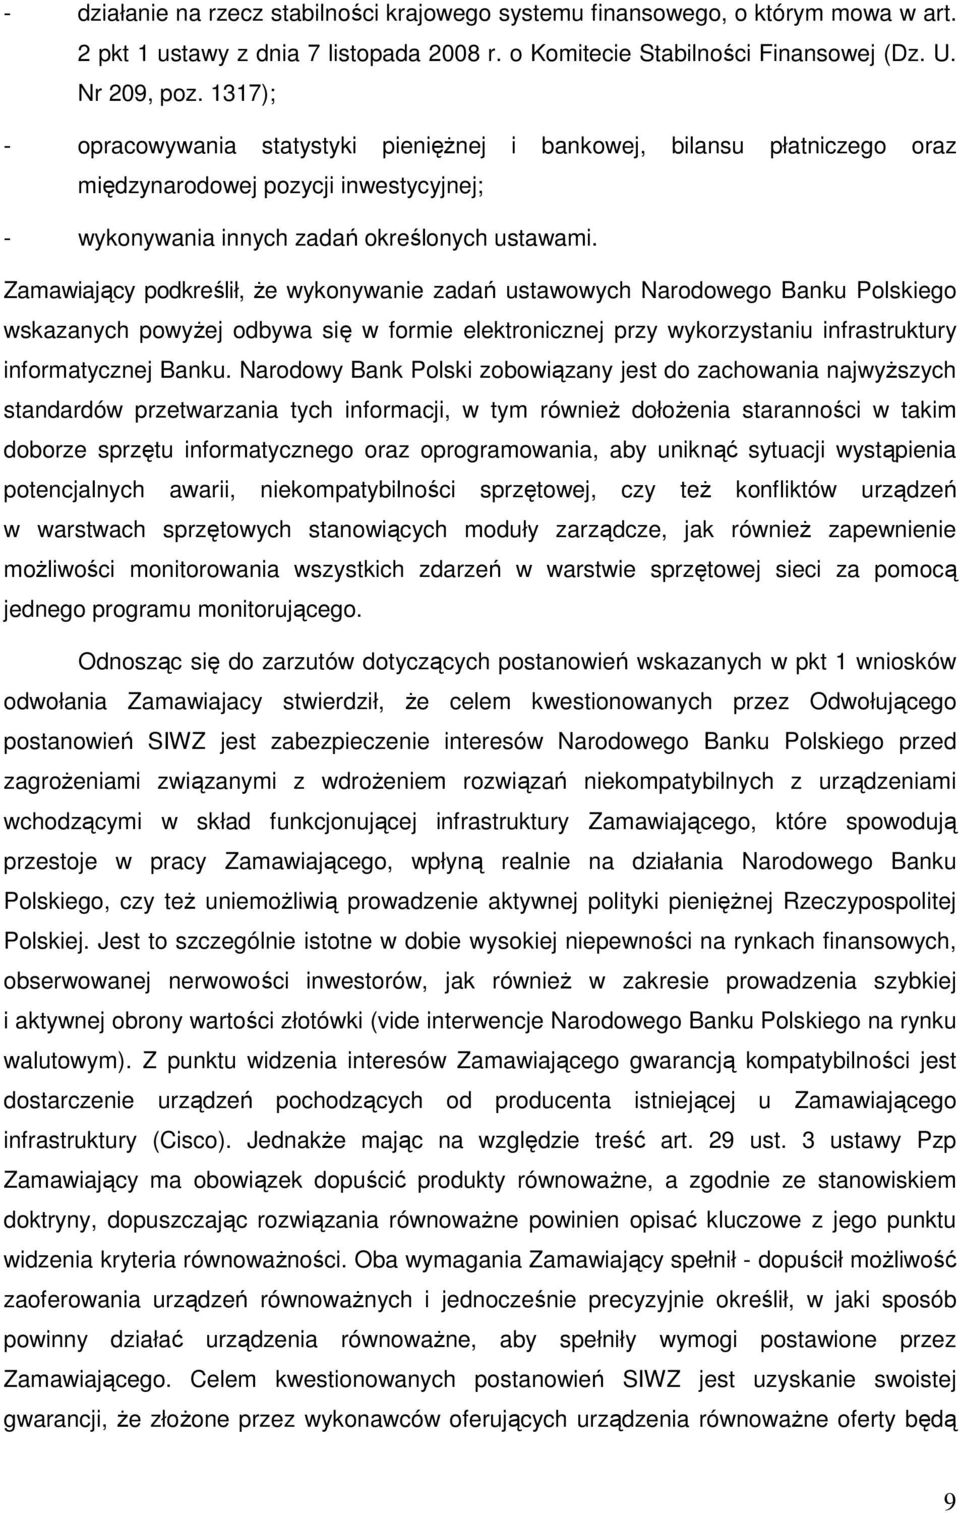 Zamawiający podkreślił, Ŝe wykonywanie zadań ustawowych Narodowego Banku Polskiego wskazanych powyŝej odbywa się w formie elektronicznej przy wykorzystaniu infrastruktury informatycznej Banku.